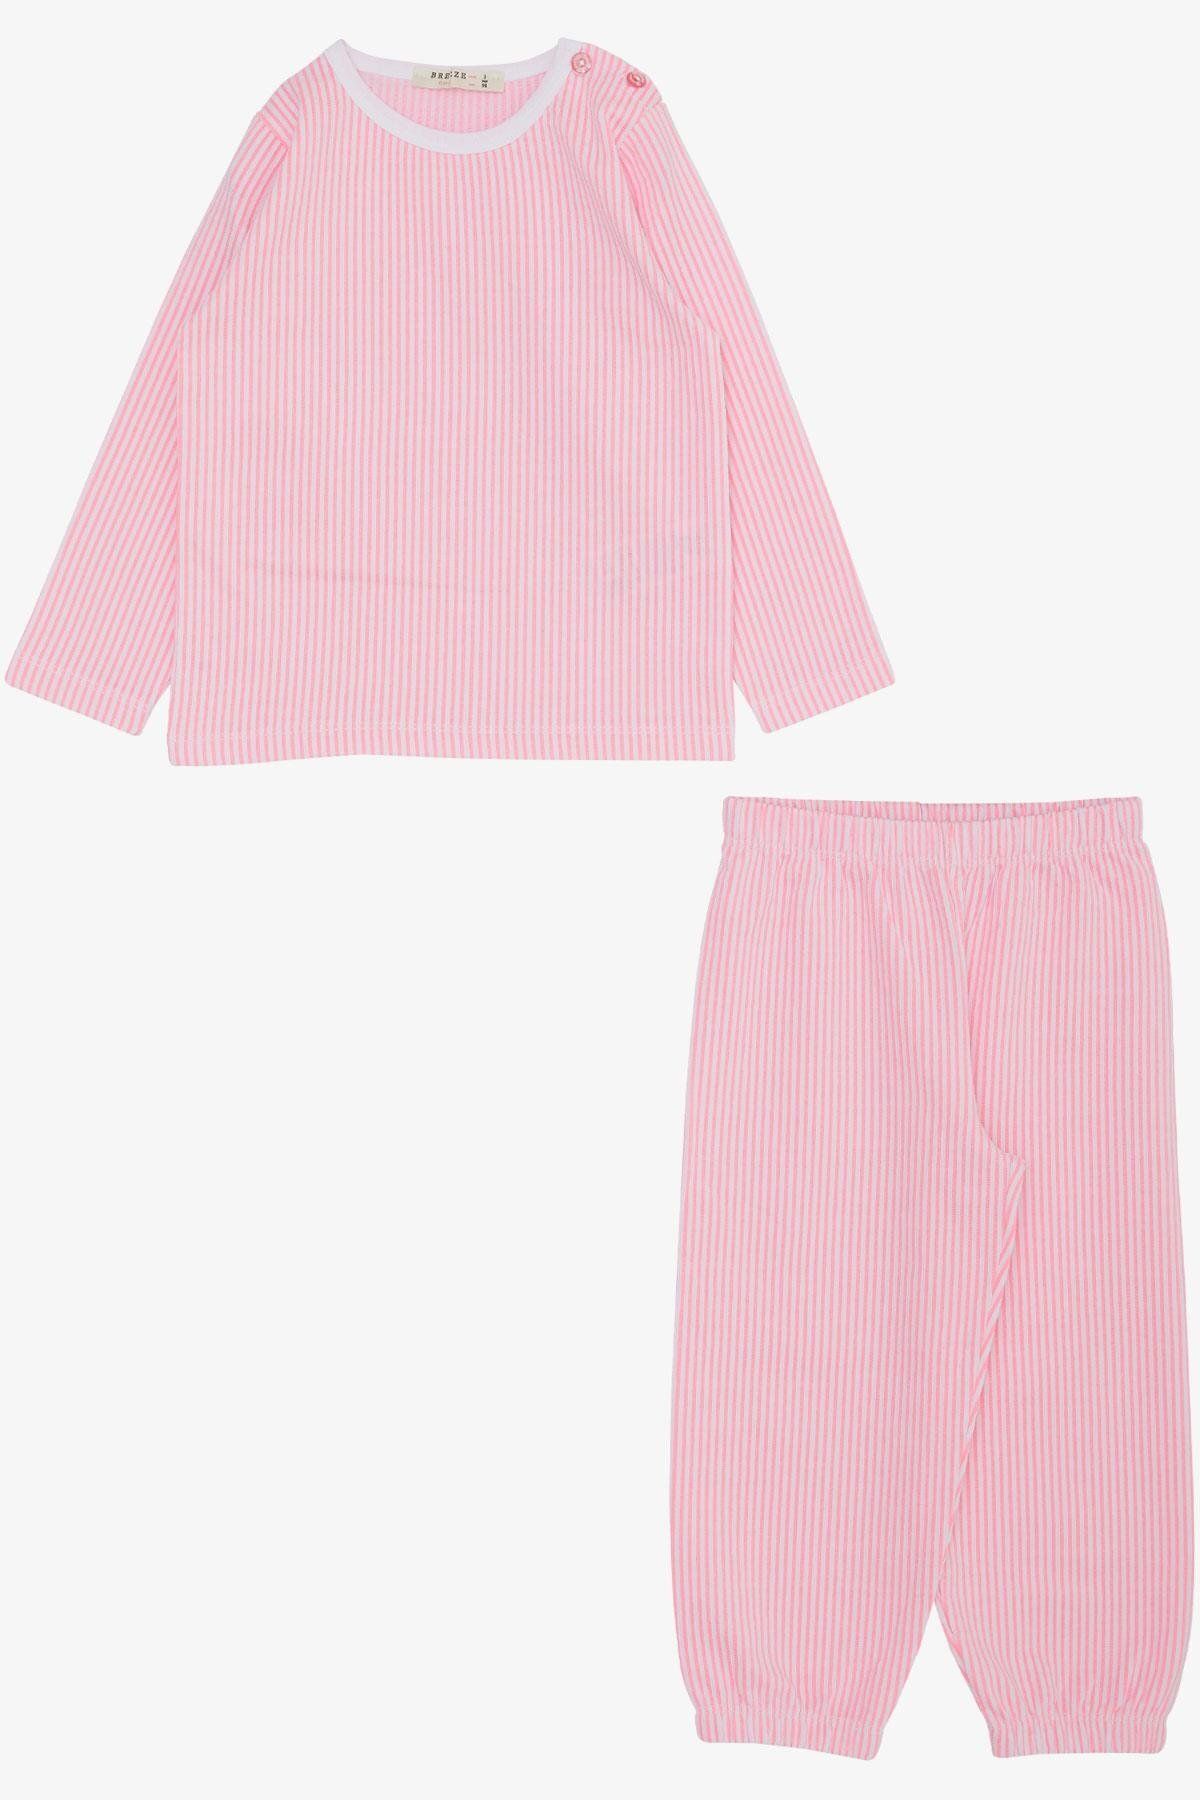 Breeze Kız Çocuk Pijama Takımı Çizgili 1-4 Yaş, Neon Pembe